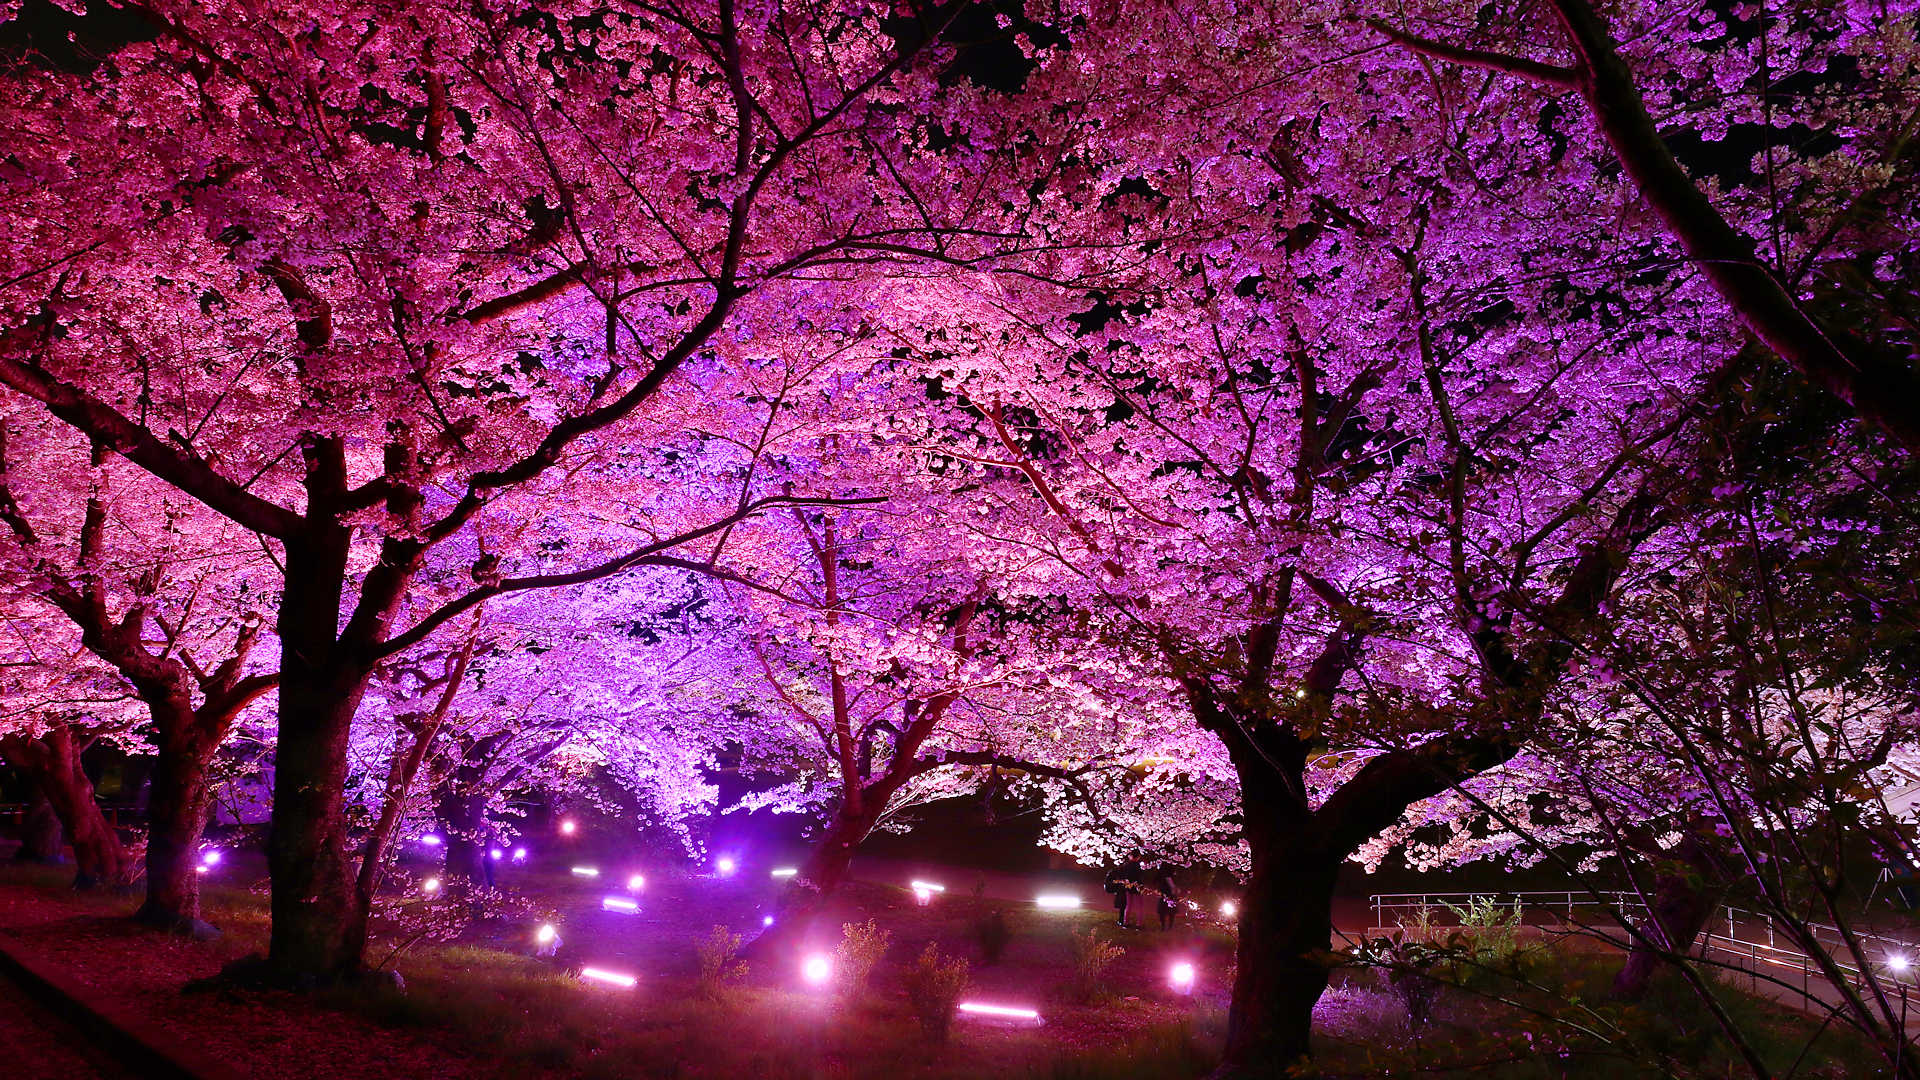 明石公園 夜桜のライトアップ 明石城築城400周年記念行事